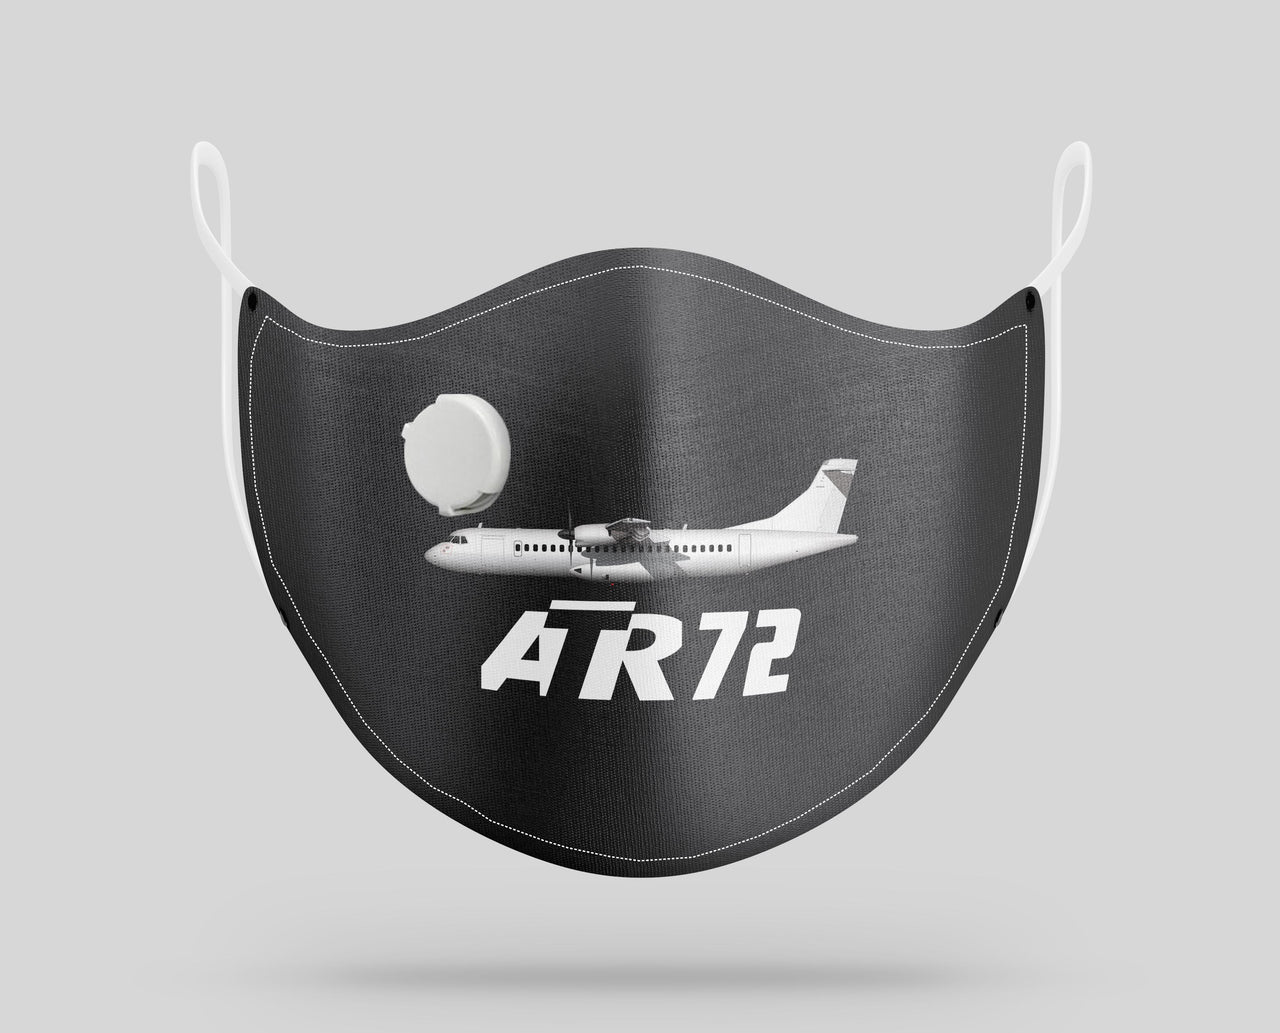 The ATR72 Designed Face Masks